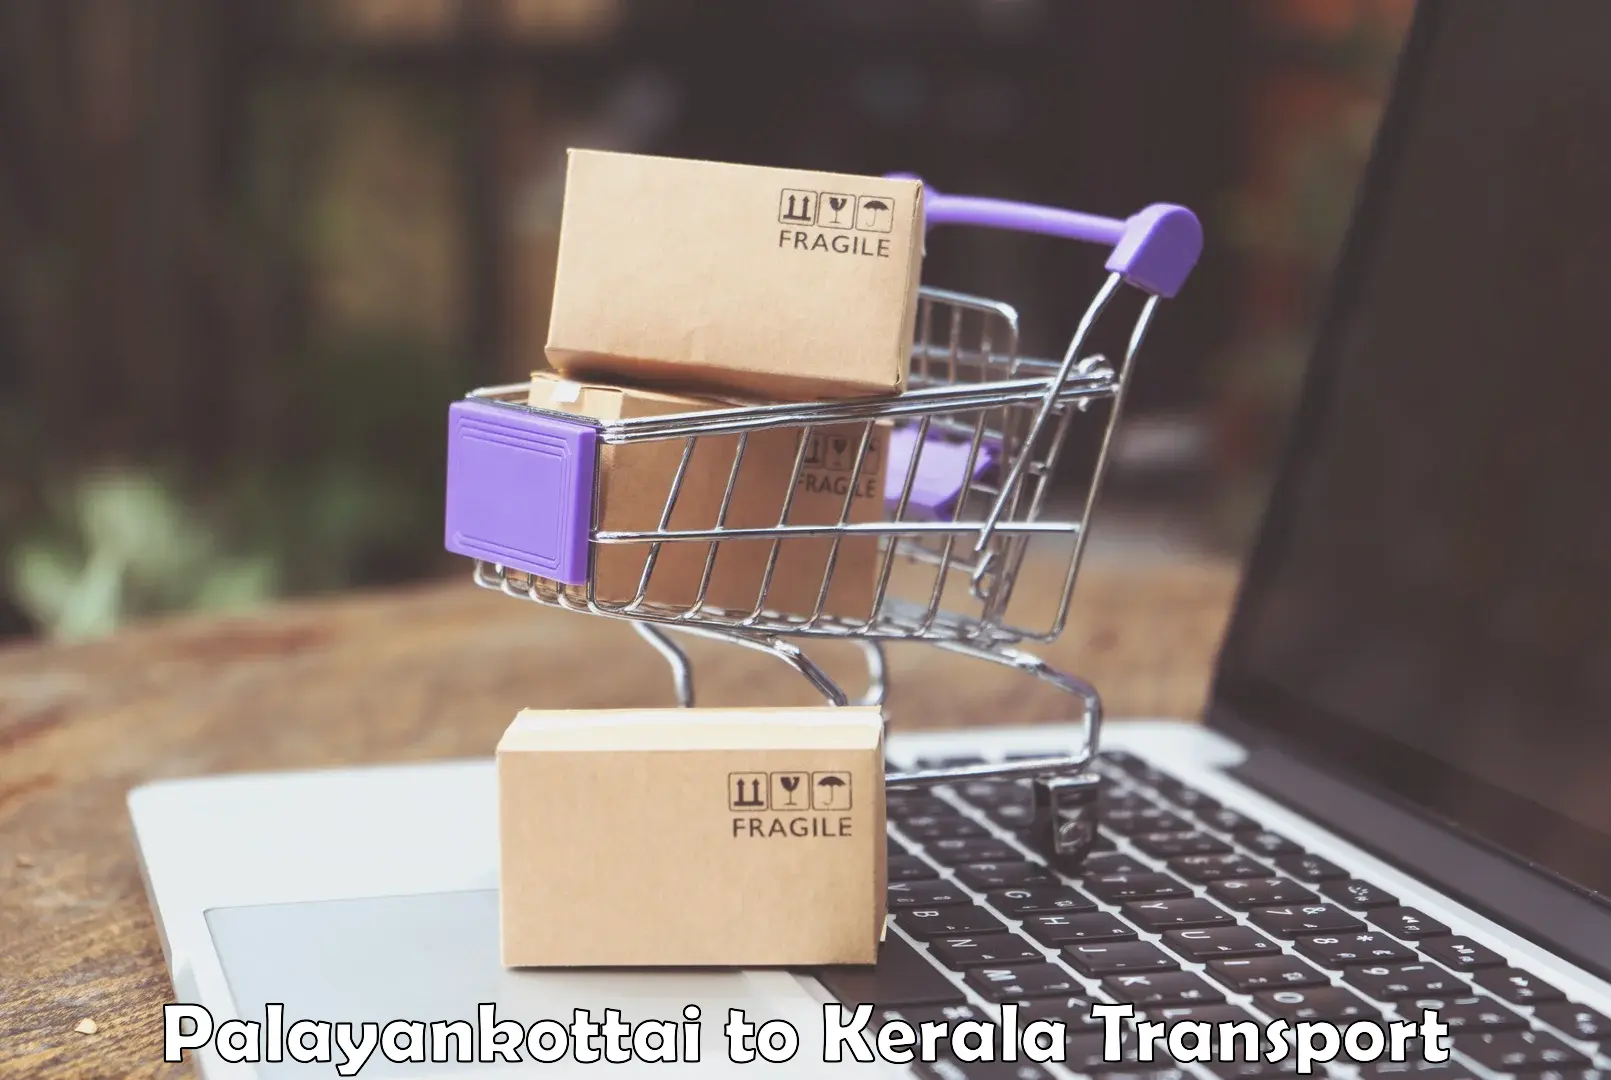 Online transport booking in Palayankottai to Kerala